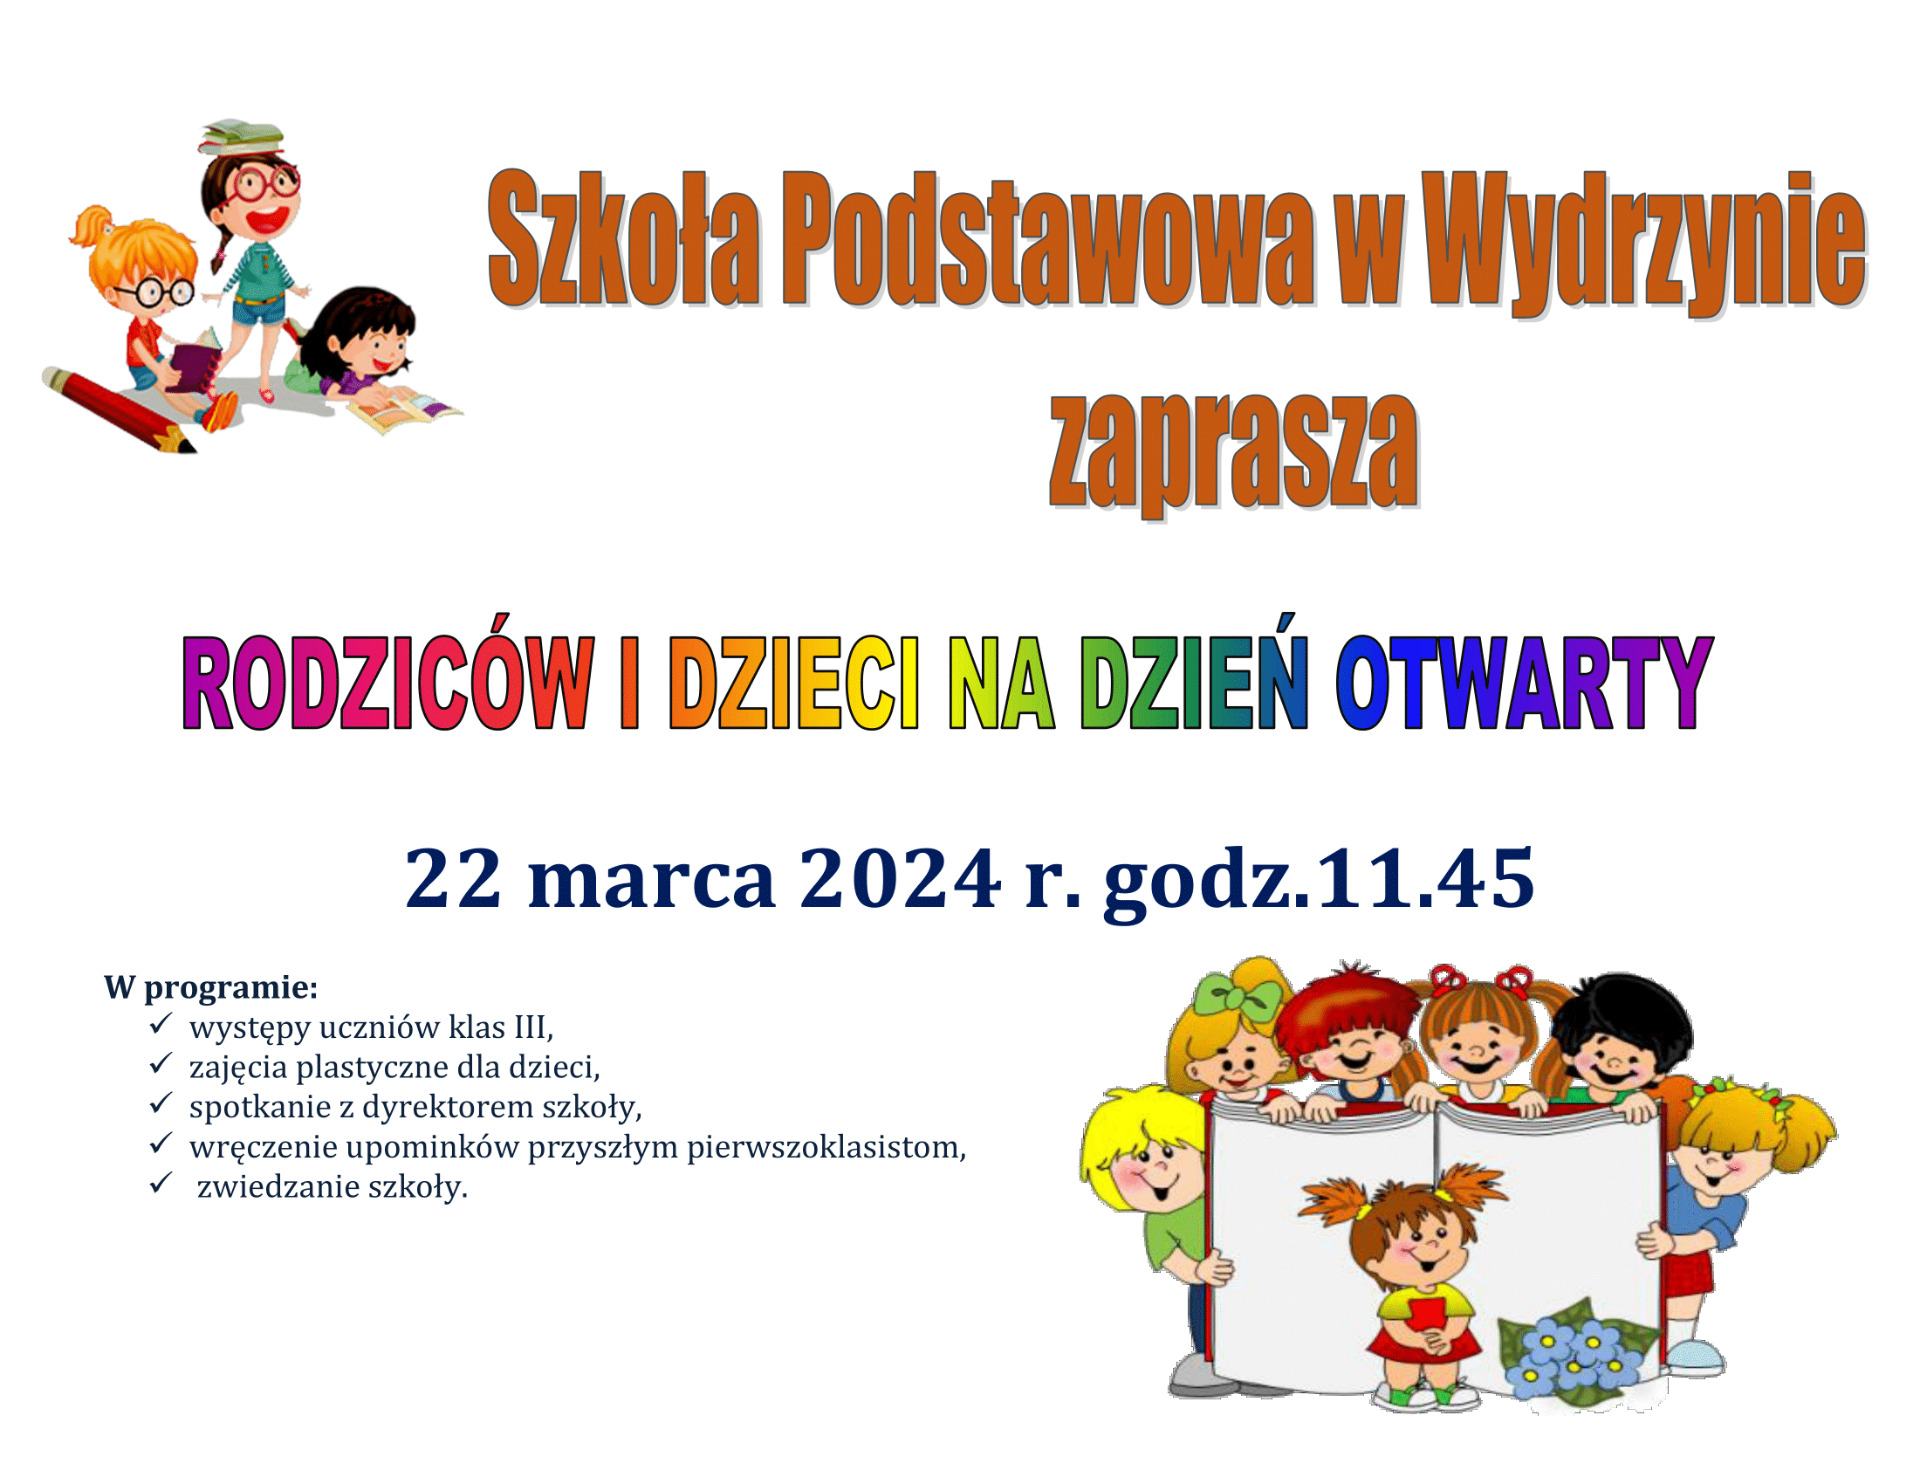 Publiczna Szkoła Podstawowa w Wydrzynie zaprasza na dzień otwarty! - Obrazek 1